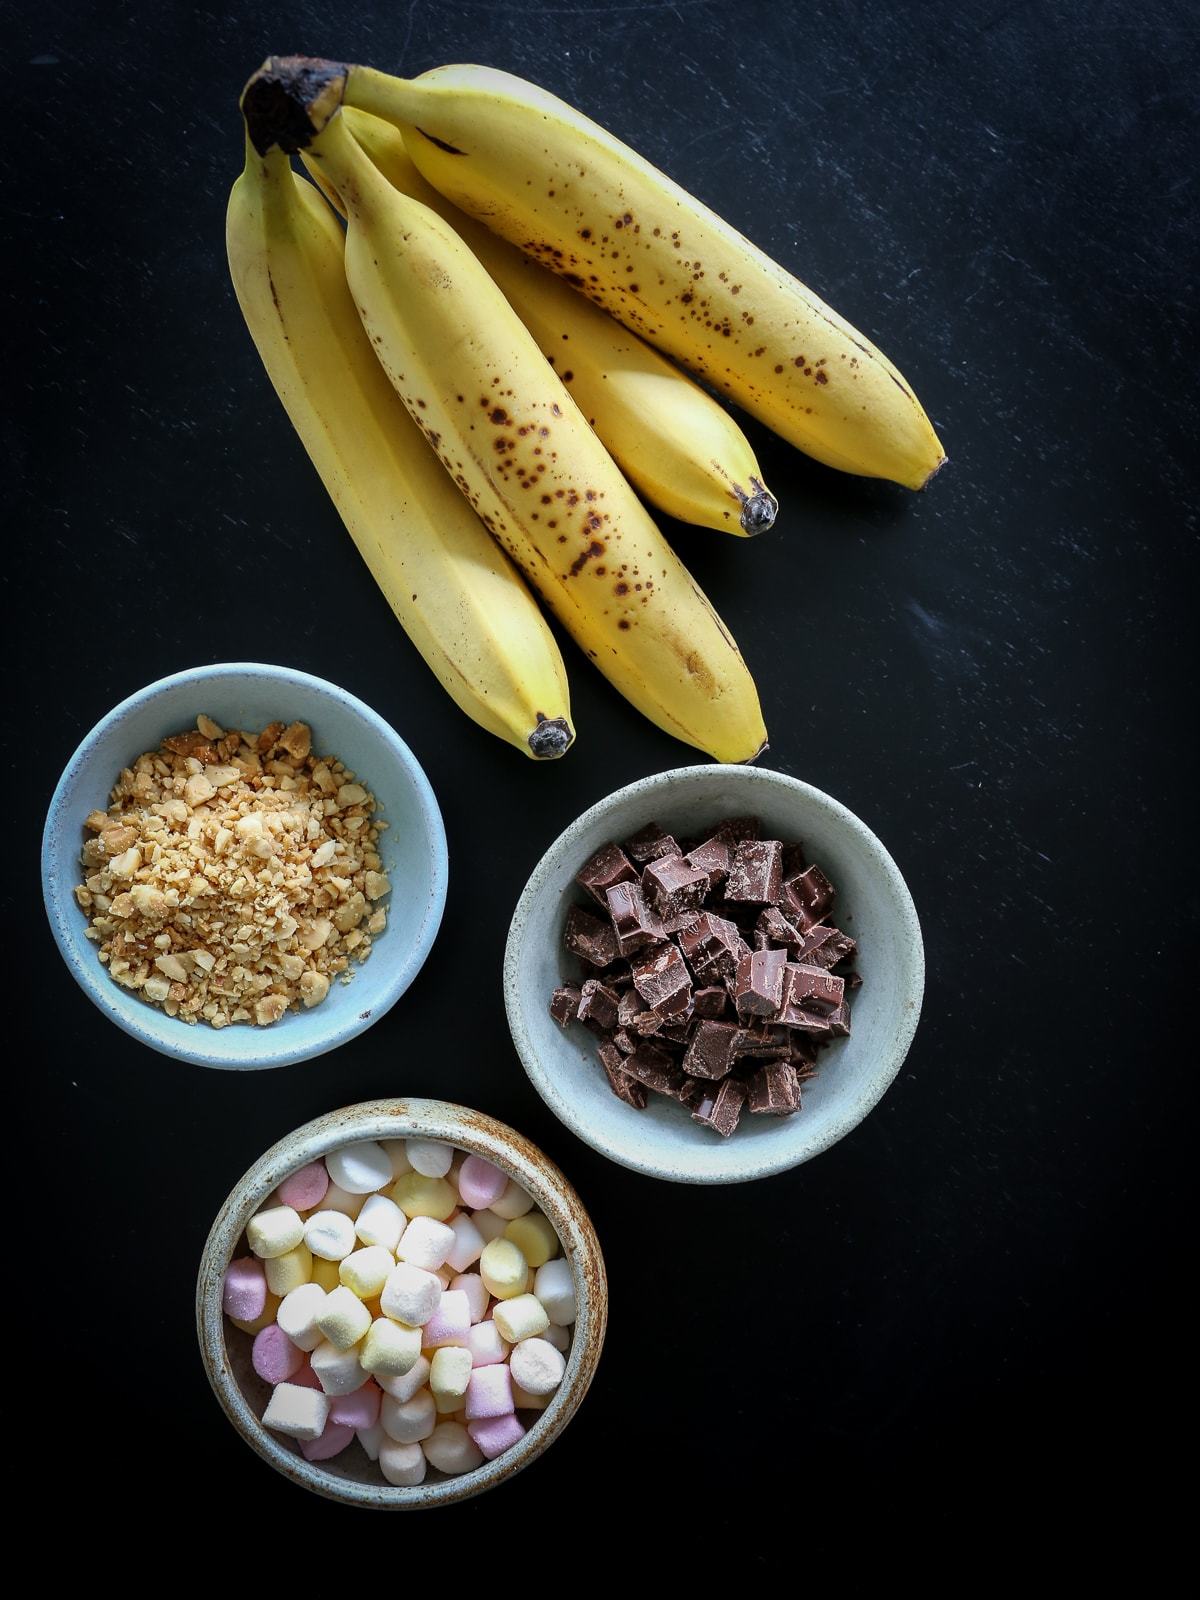 indre Precipice forbinde Grillede bananer med chokolade, skumfiduser og peanuts - Foodfanatic.dk